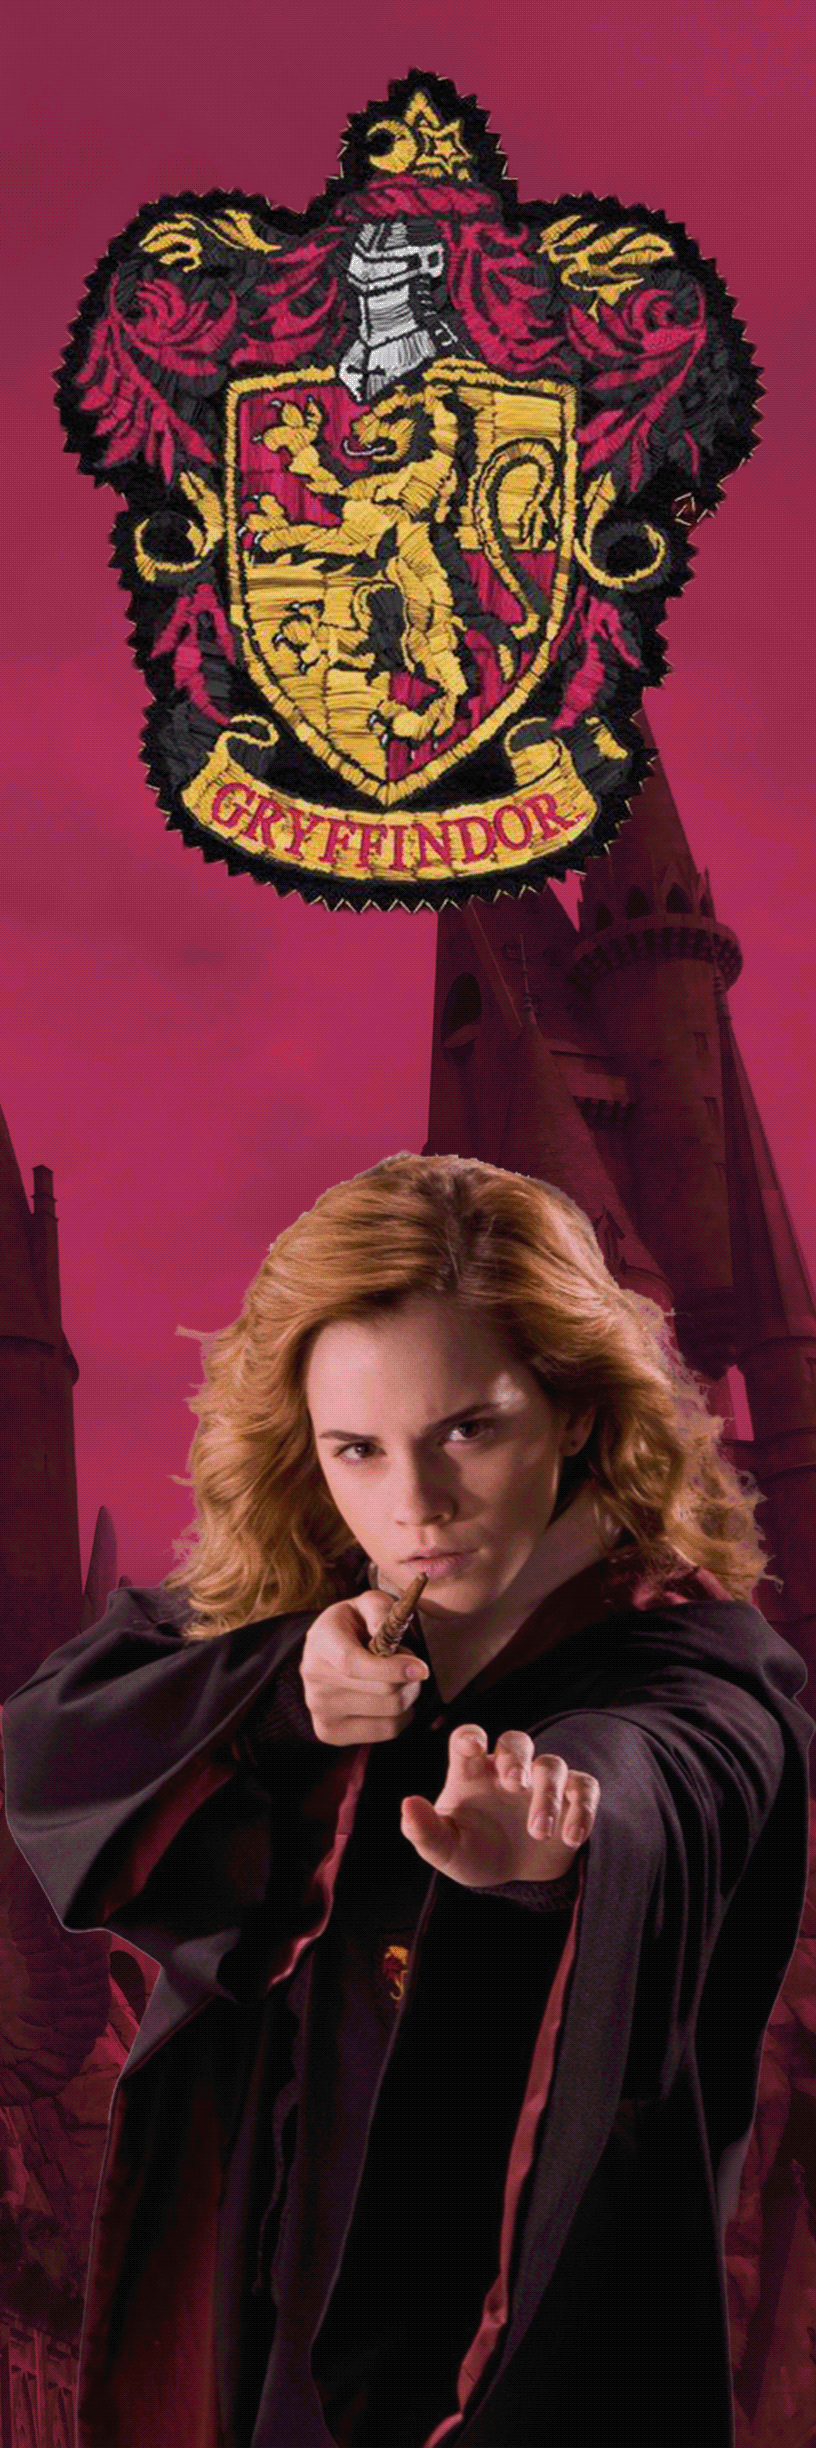 bookmarks Gryffindor harry potter Hermione Granger Hogwarts Hogwarts Houses Hufflepuff Ravenclaw Slytherin voldemort